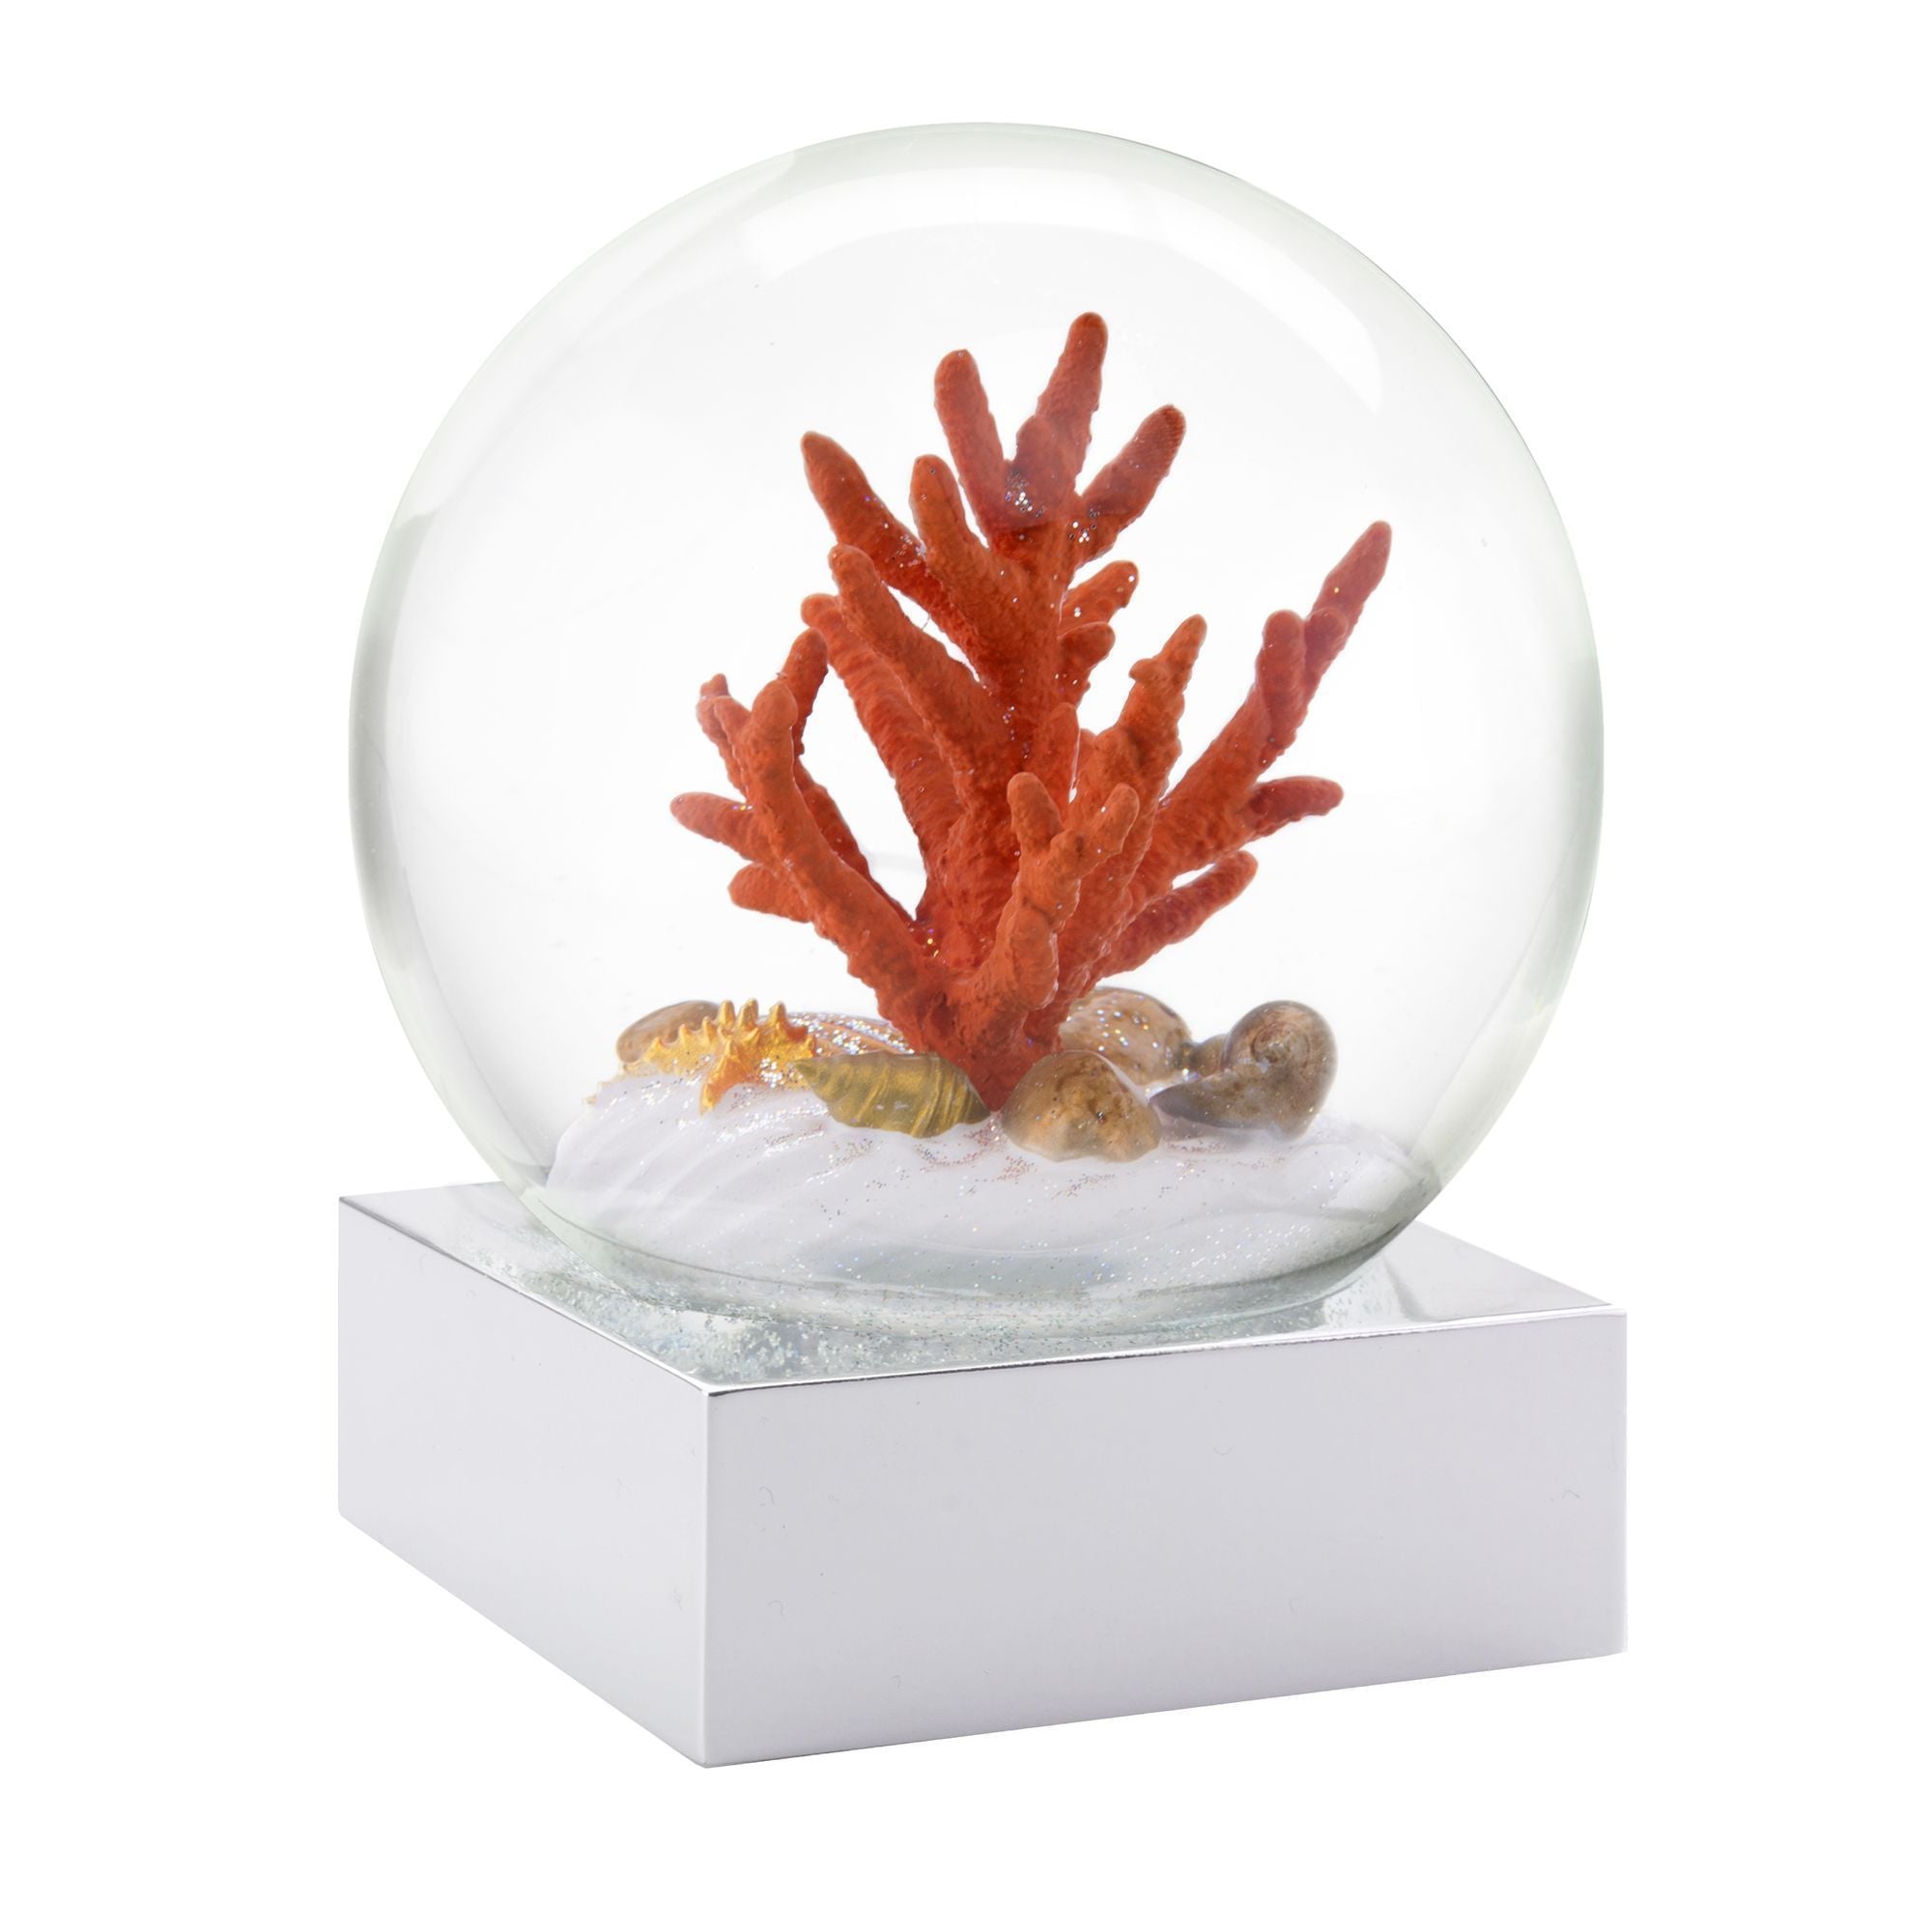 Coral des globes de neige fraîche